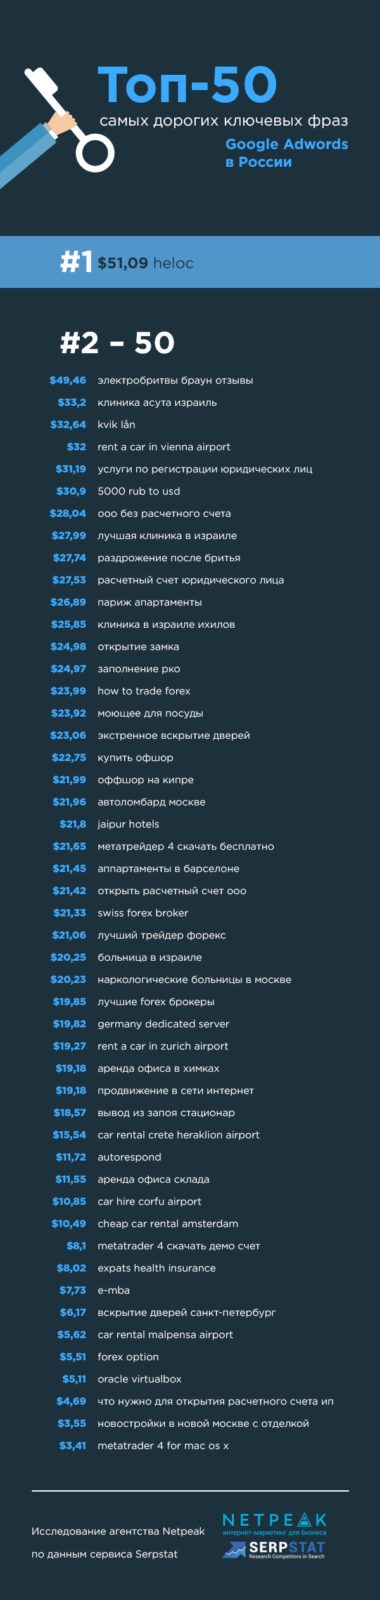 Топ-50 самых дорогих ключевых слов AdWords в России и Украине